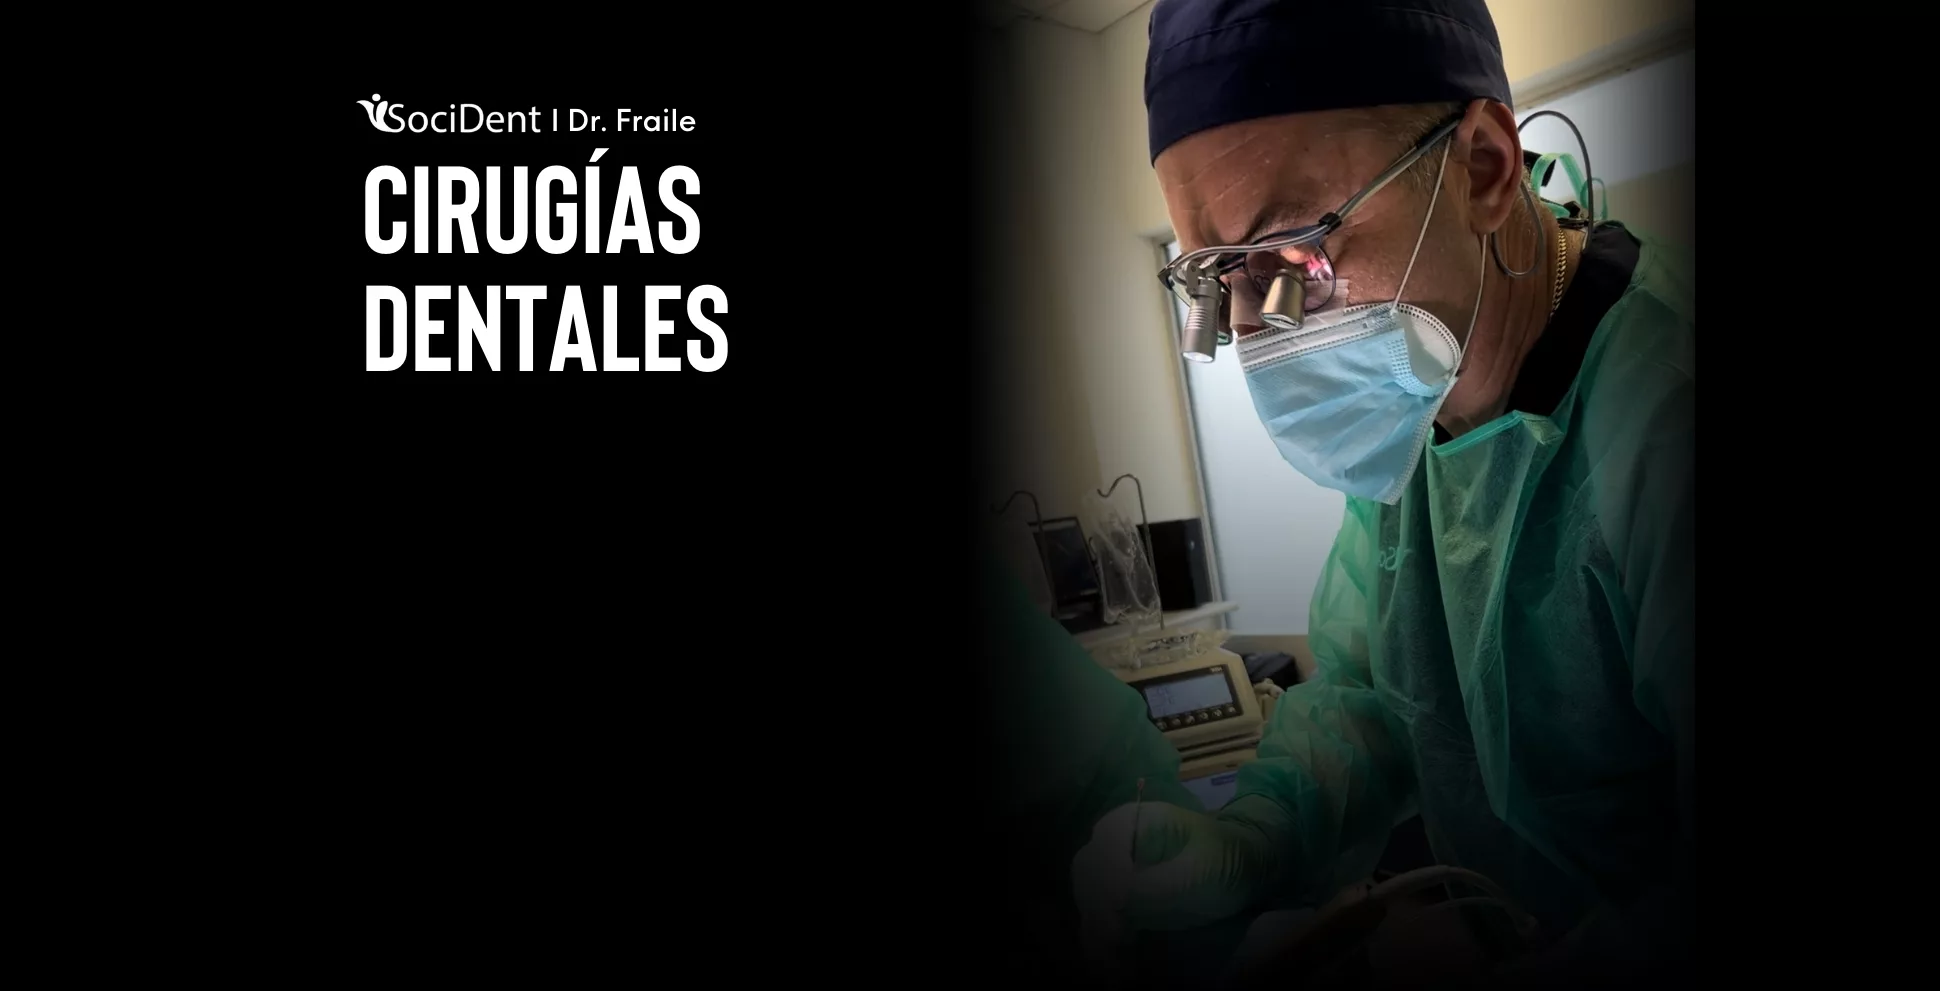 Cirugias dentales doctor fraile en madrid, mostoles y navalcarnero